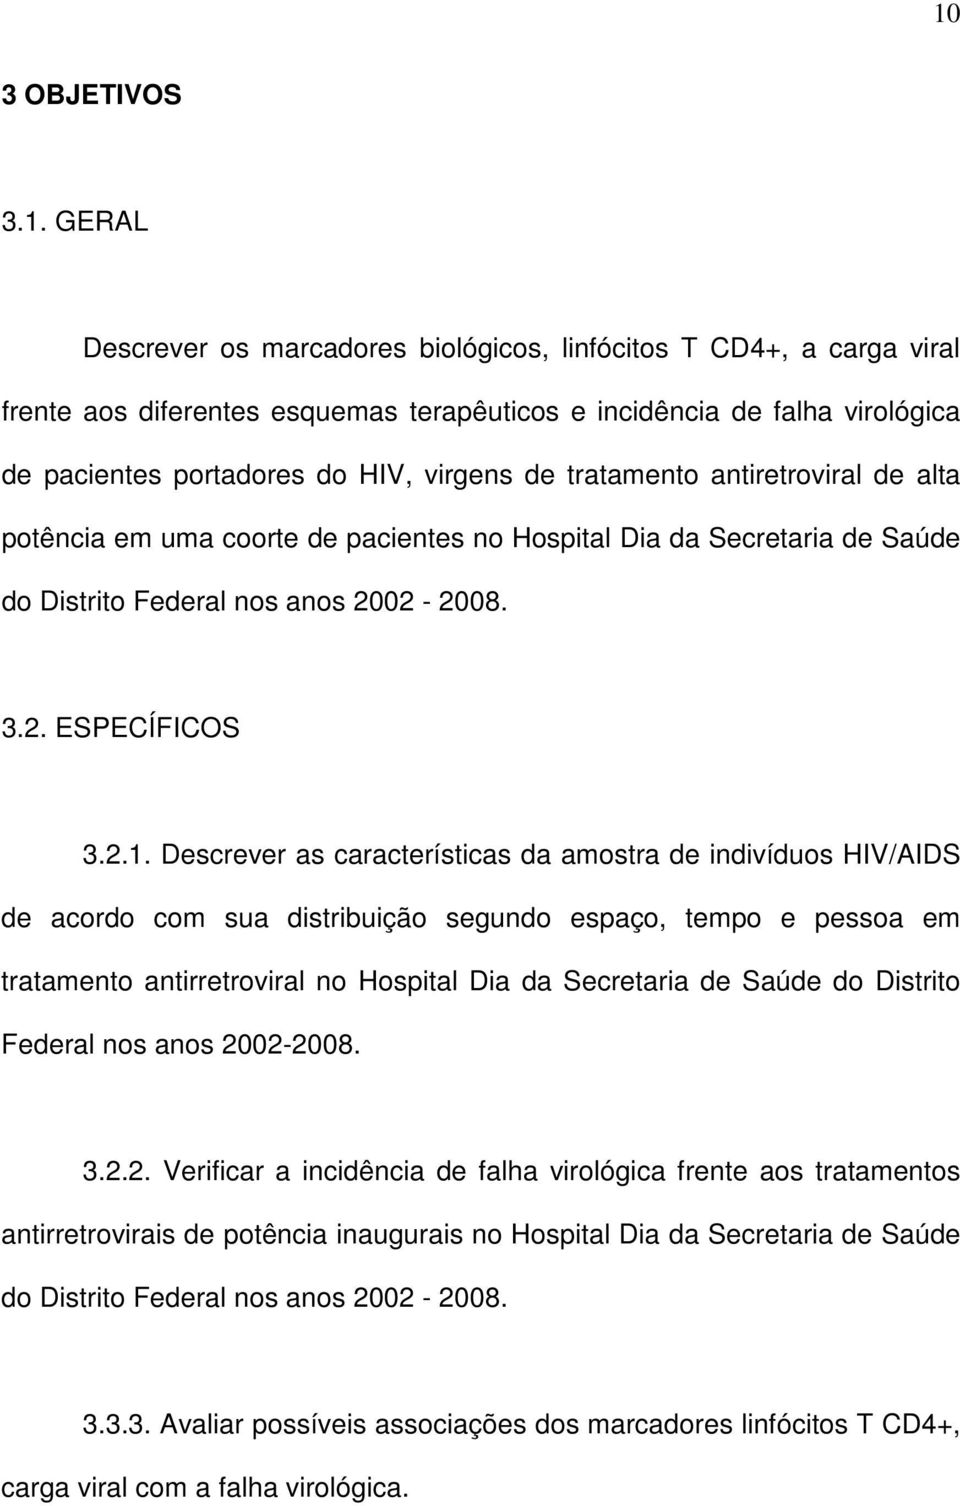 Descrever as características da amostra de indivíduos HIV/AIDS de acordo com sua distribuição segundo espaço, tempo e pessoa em tratamento antirretroviral no Hospital Dia da Secretaria de Saúde do